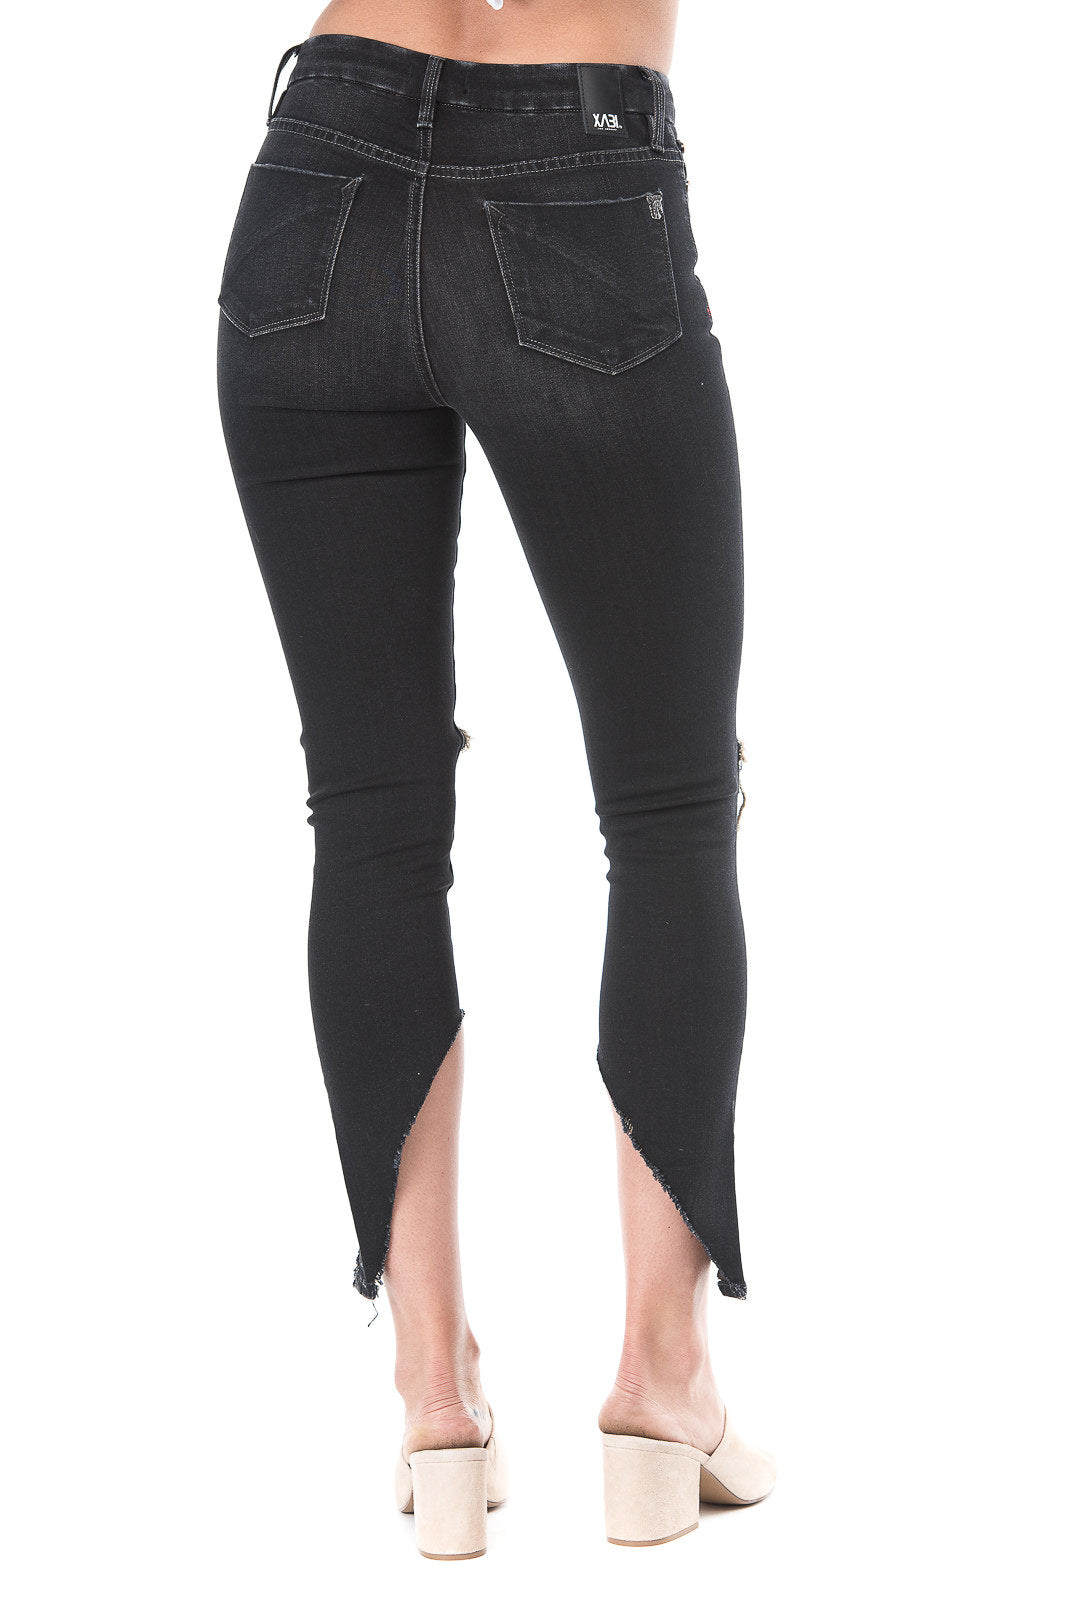 Women knee-cut Black jeans